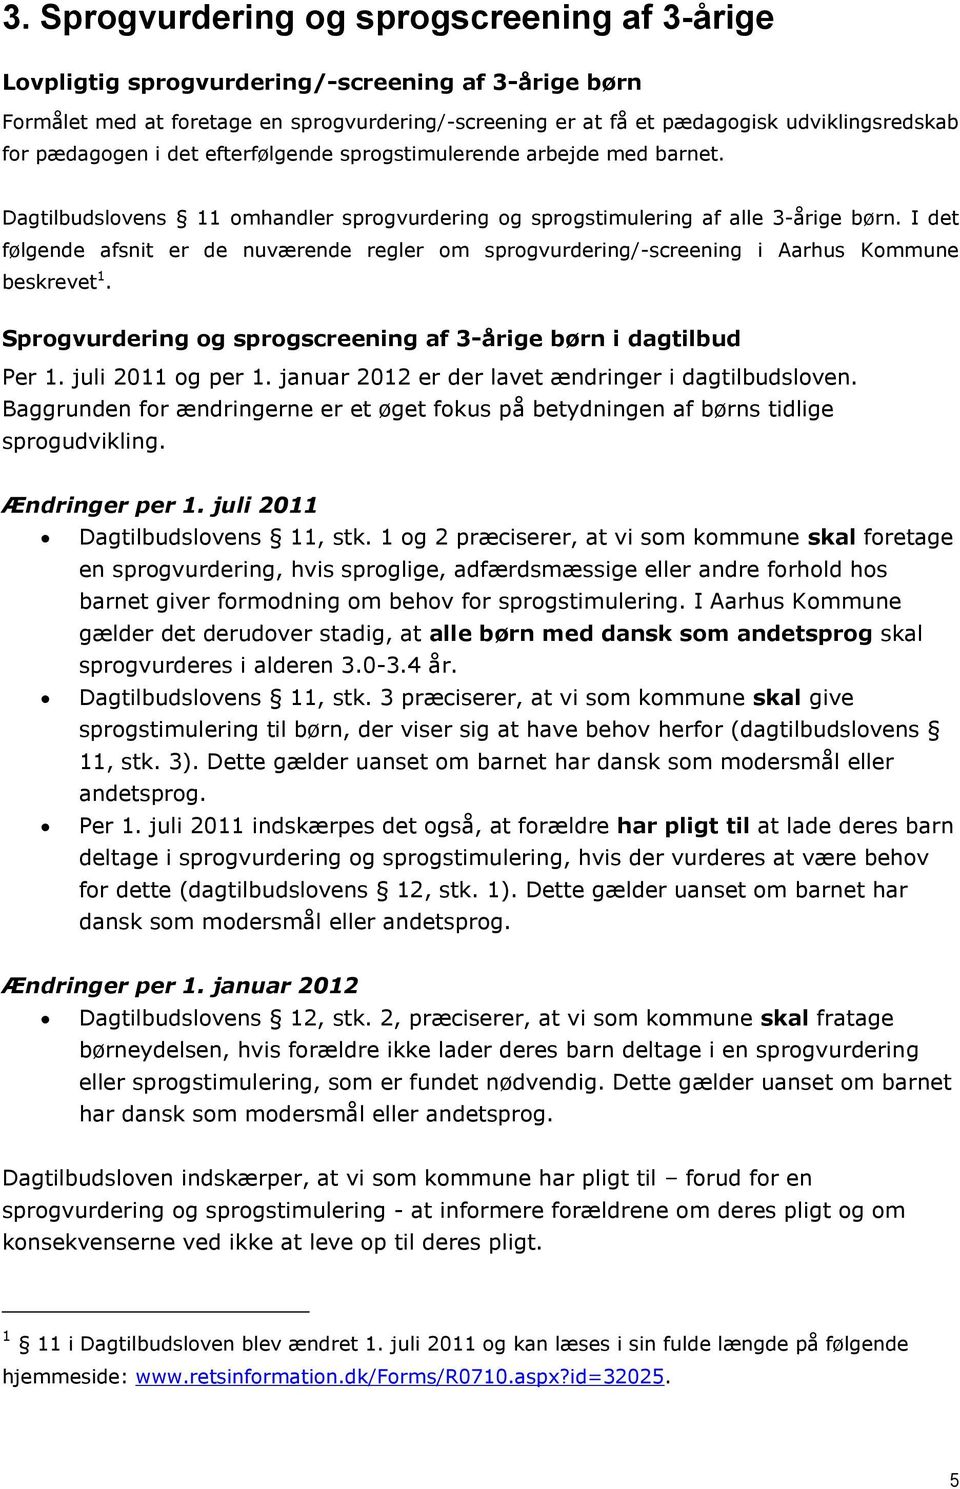 I det følgende afsnit er de nuværende regler om sprogvurdering/-screening i Aarhus Kommune beskrevet 1. Sprogvurdering og sprogscreening af 3-årige børn i dagtilbud Per 1. juli 2011 og per 1.